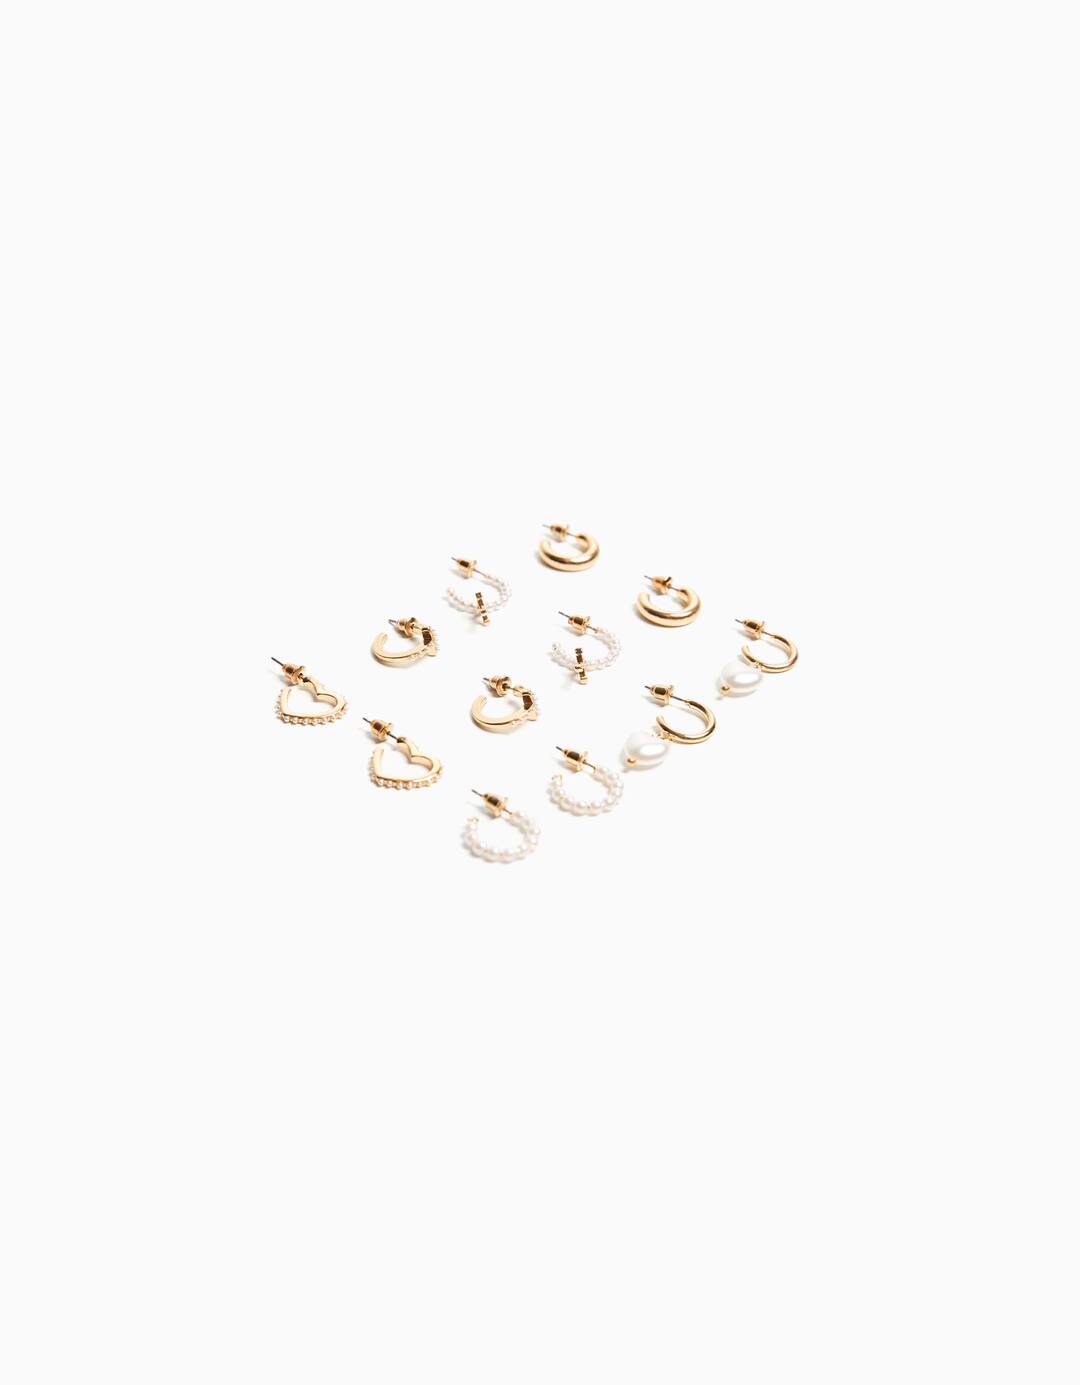 Set of 6 faux pearl rhinestone heart earrings